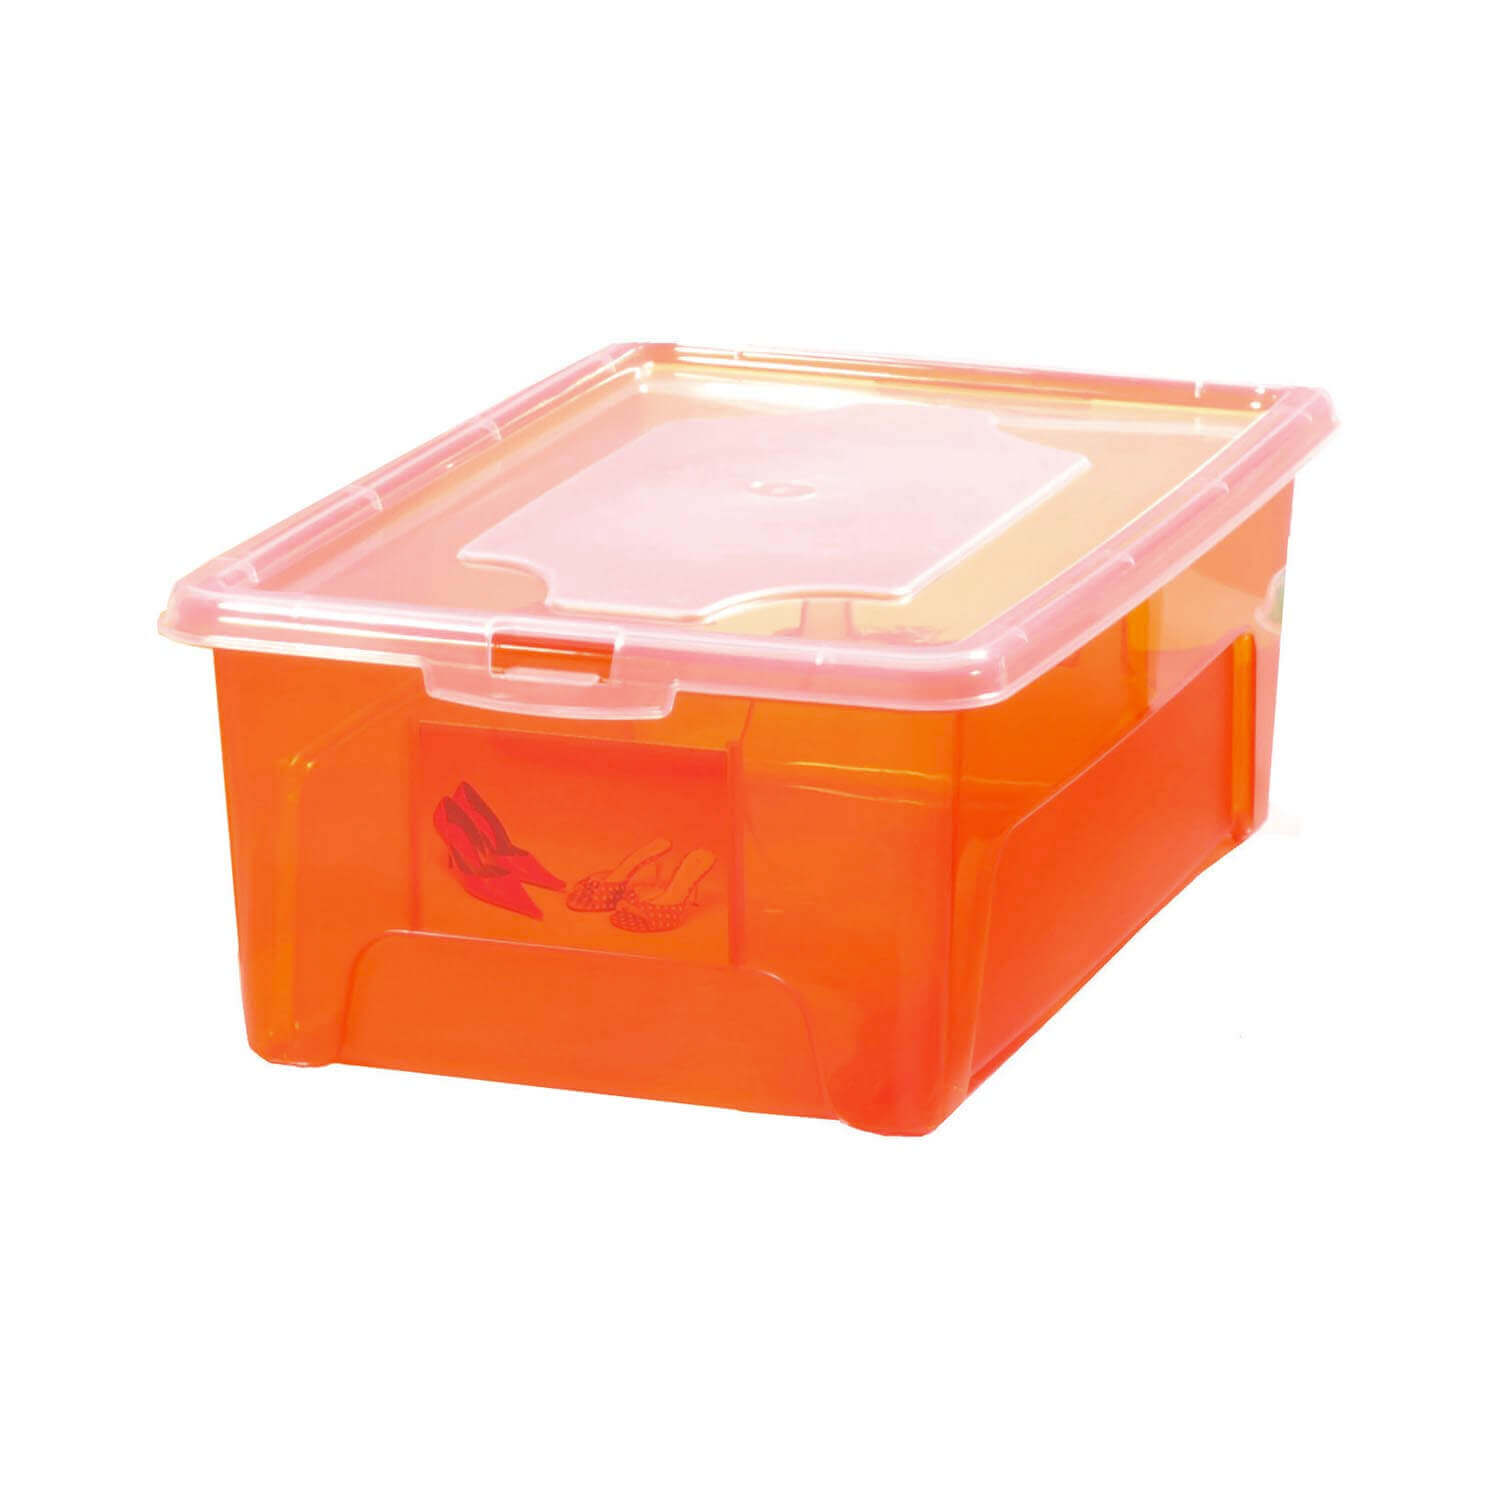 Aufbewahrungsbox "Easybox" 18 L in orange, Kunststoffbox